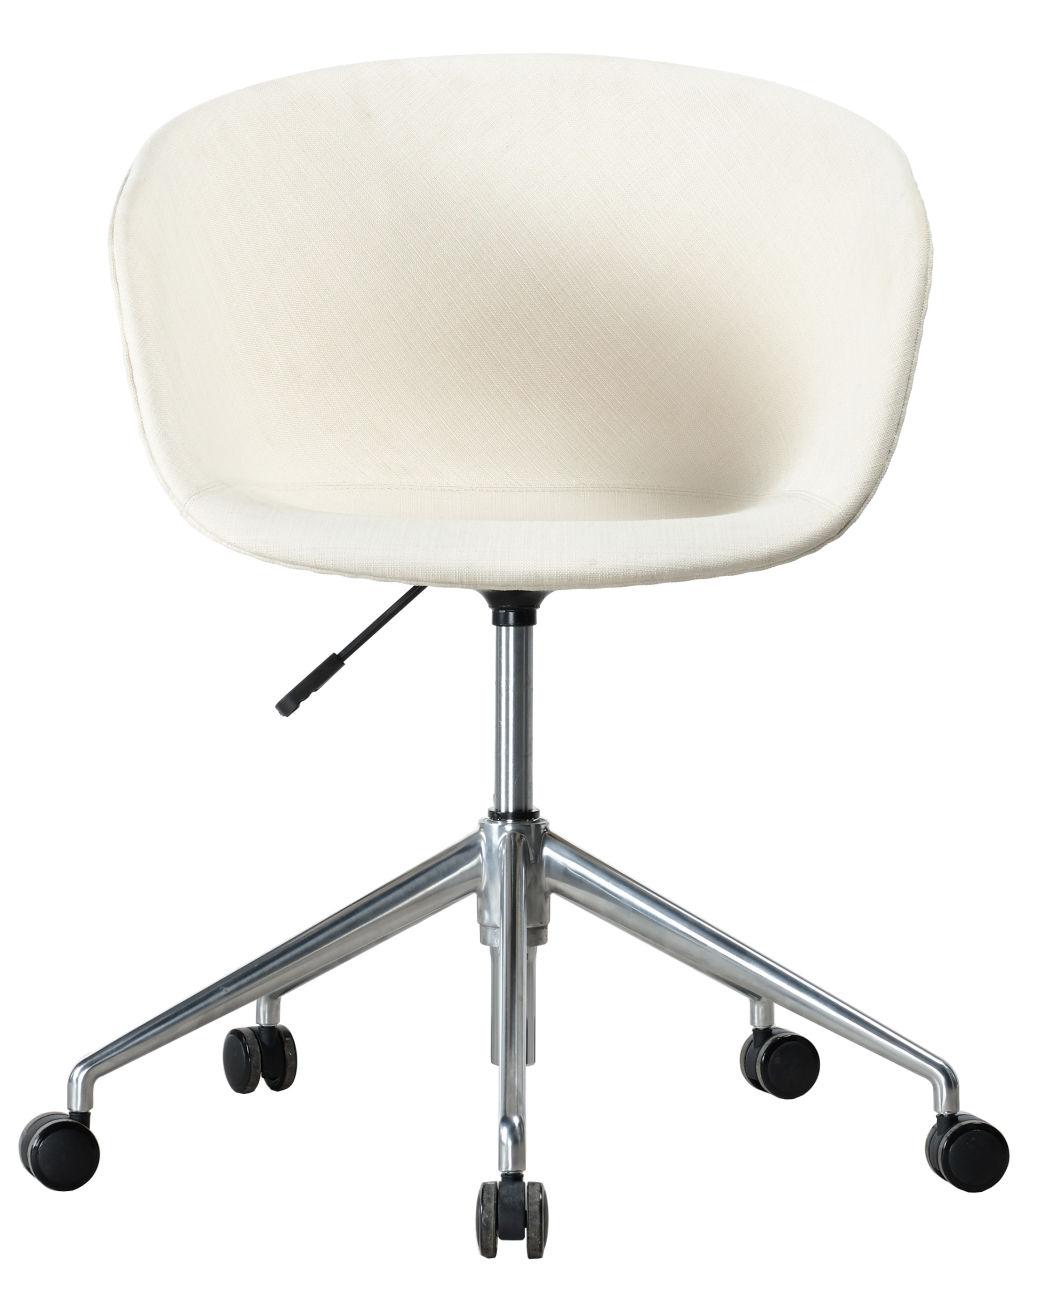 PP Plastic Shell Soft Upholstery Modern Rotary Swivel Armrest Chair